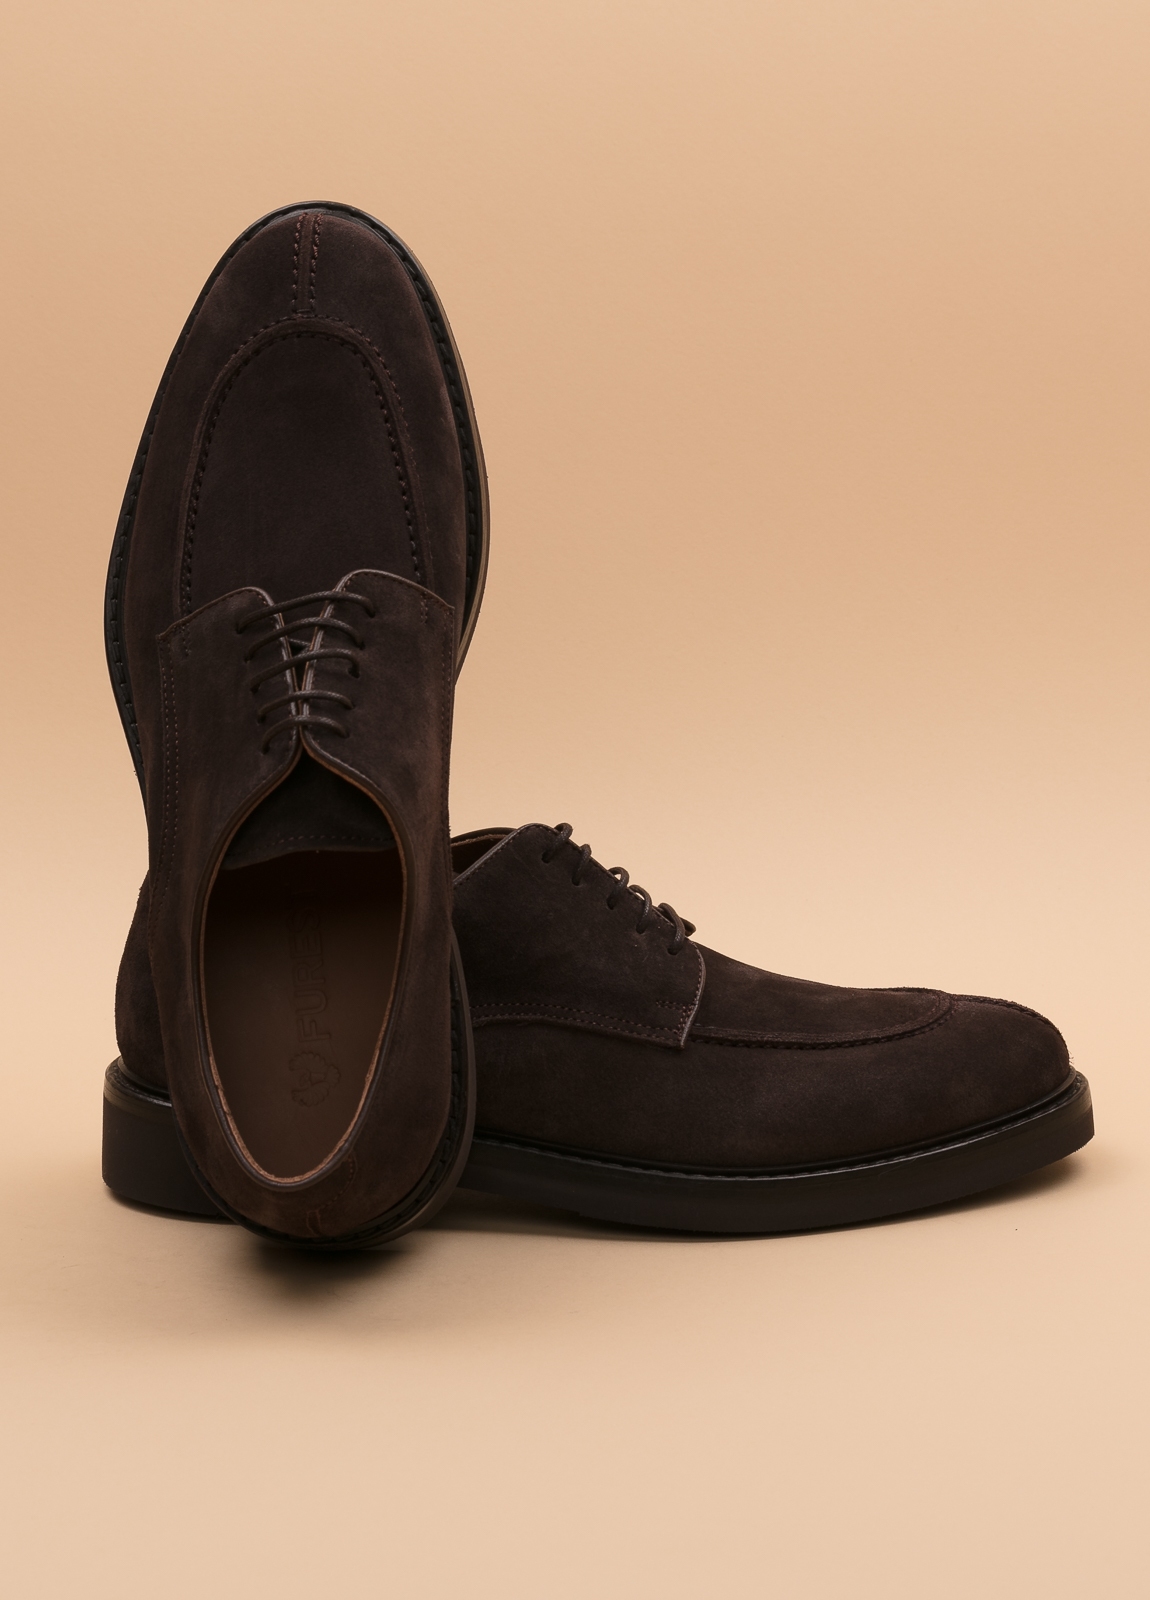 Zapato sport wear furest colección marrón oscuro - Ítem2